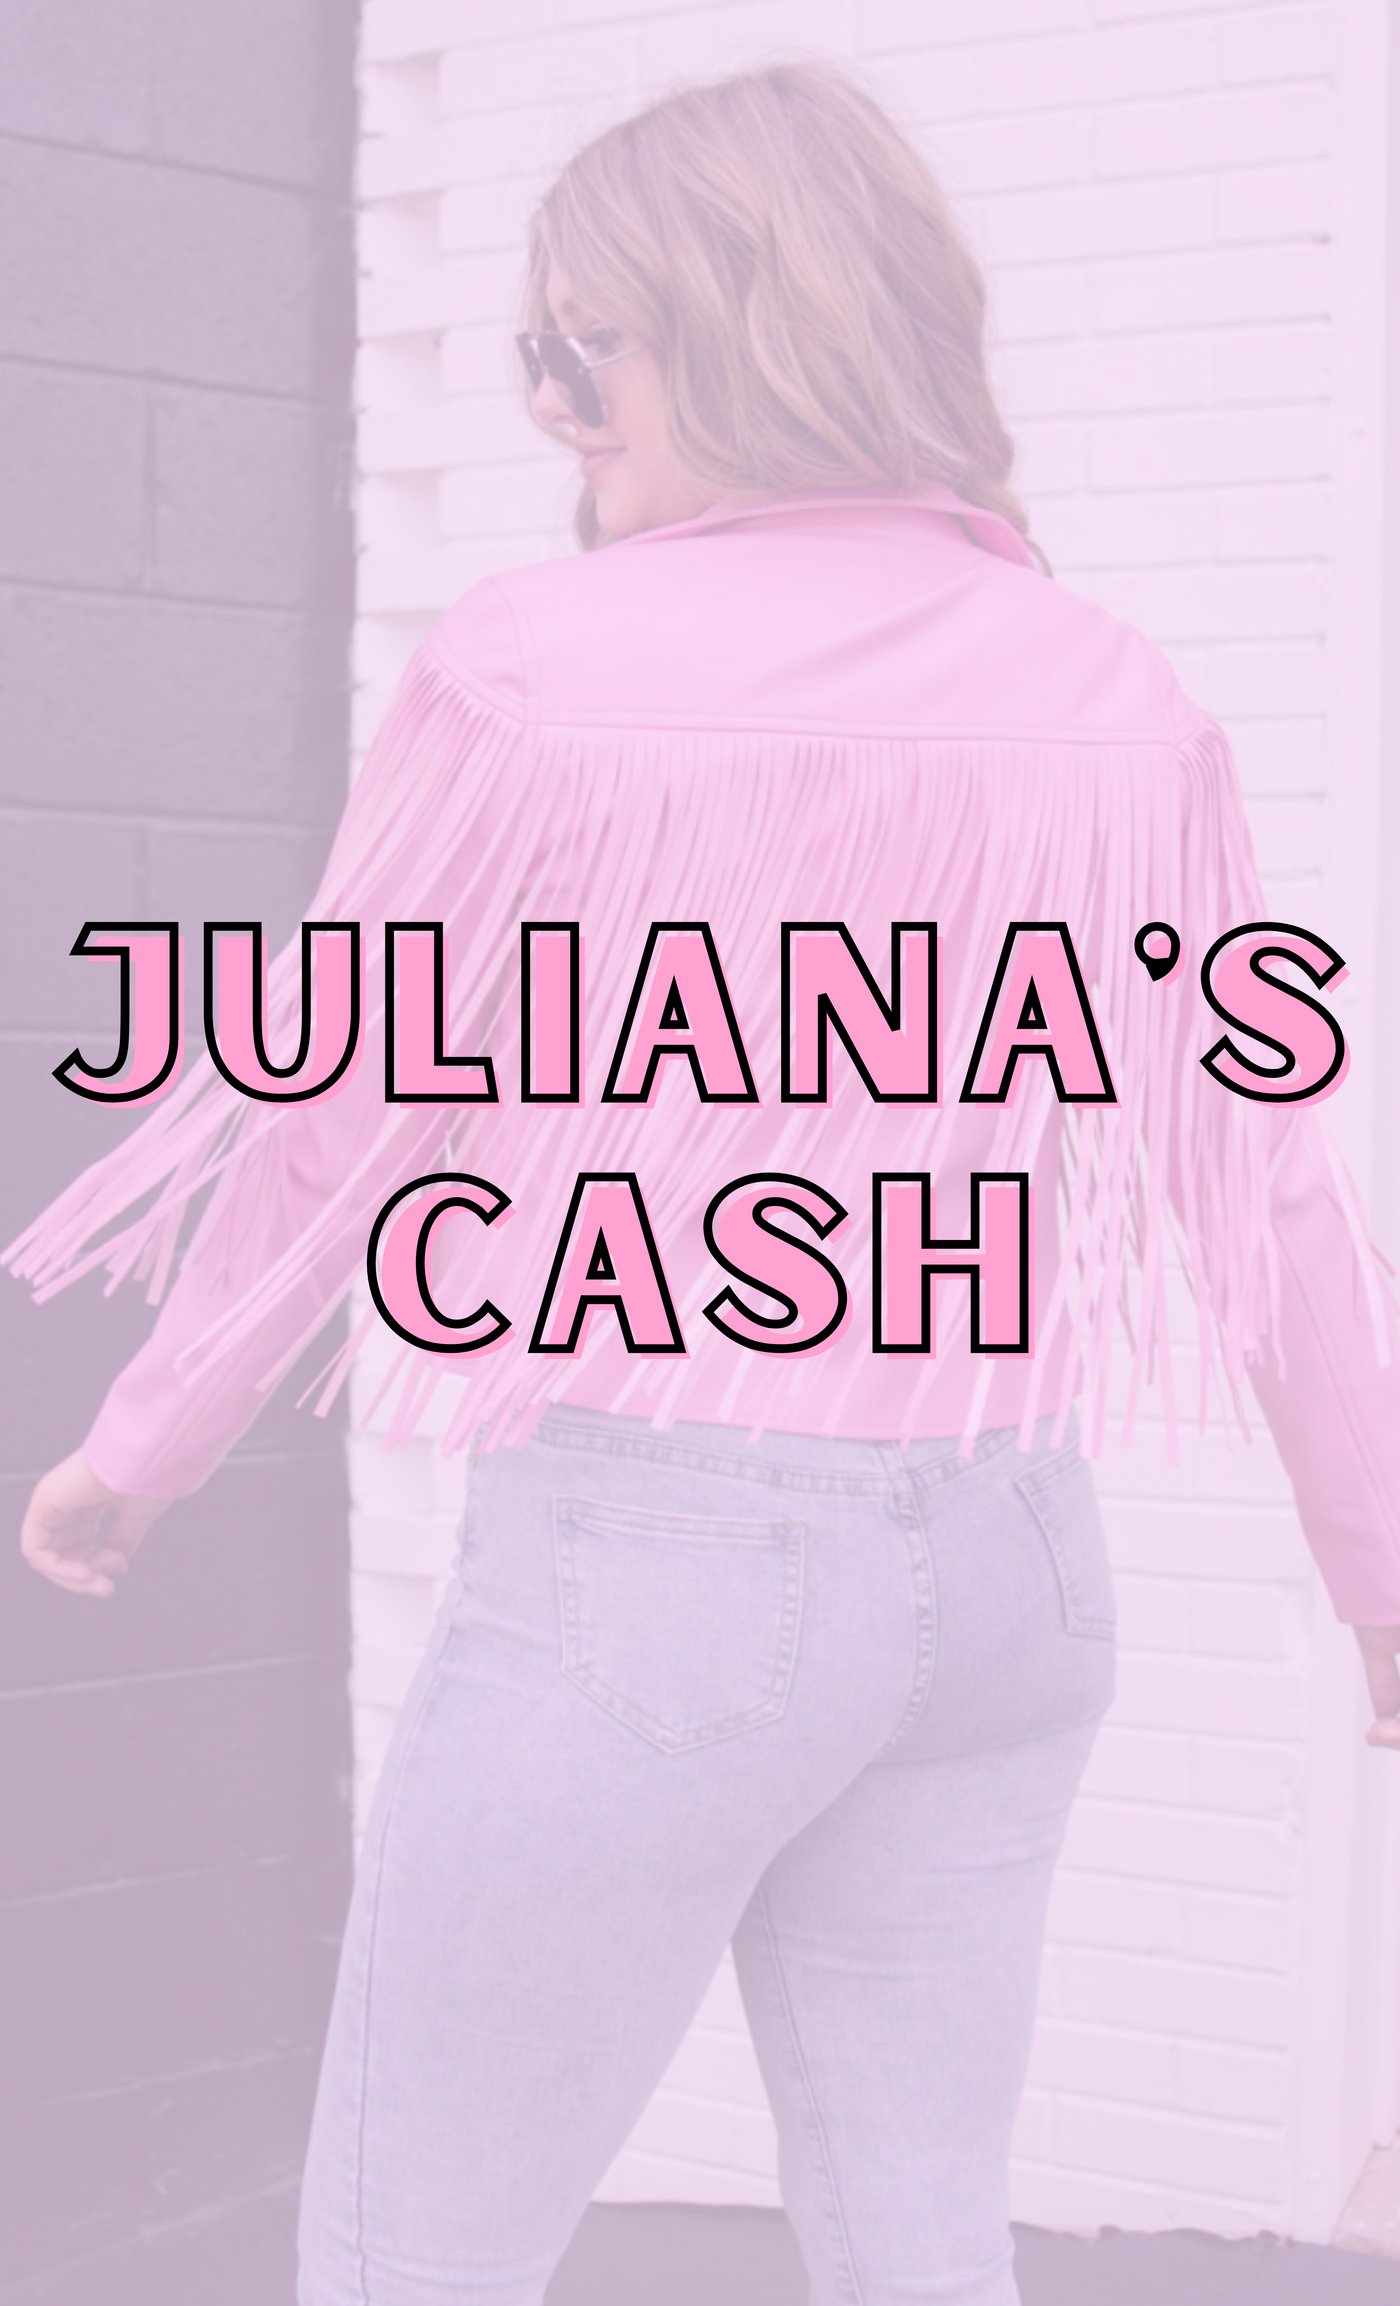 JULIANA'S CASH